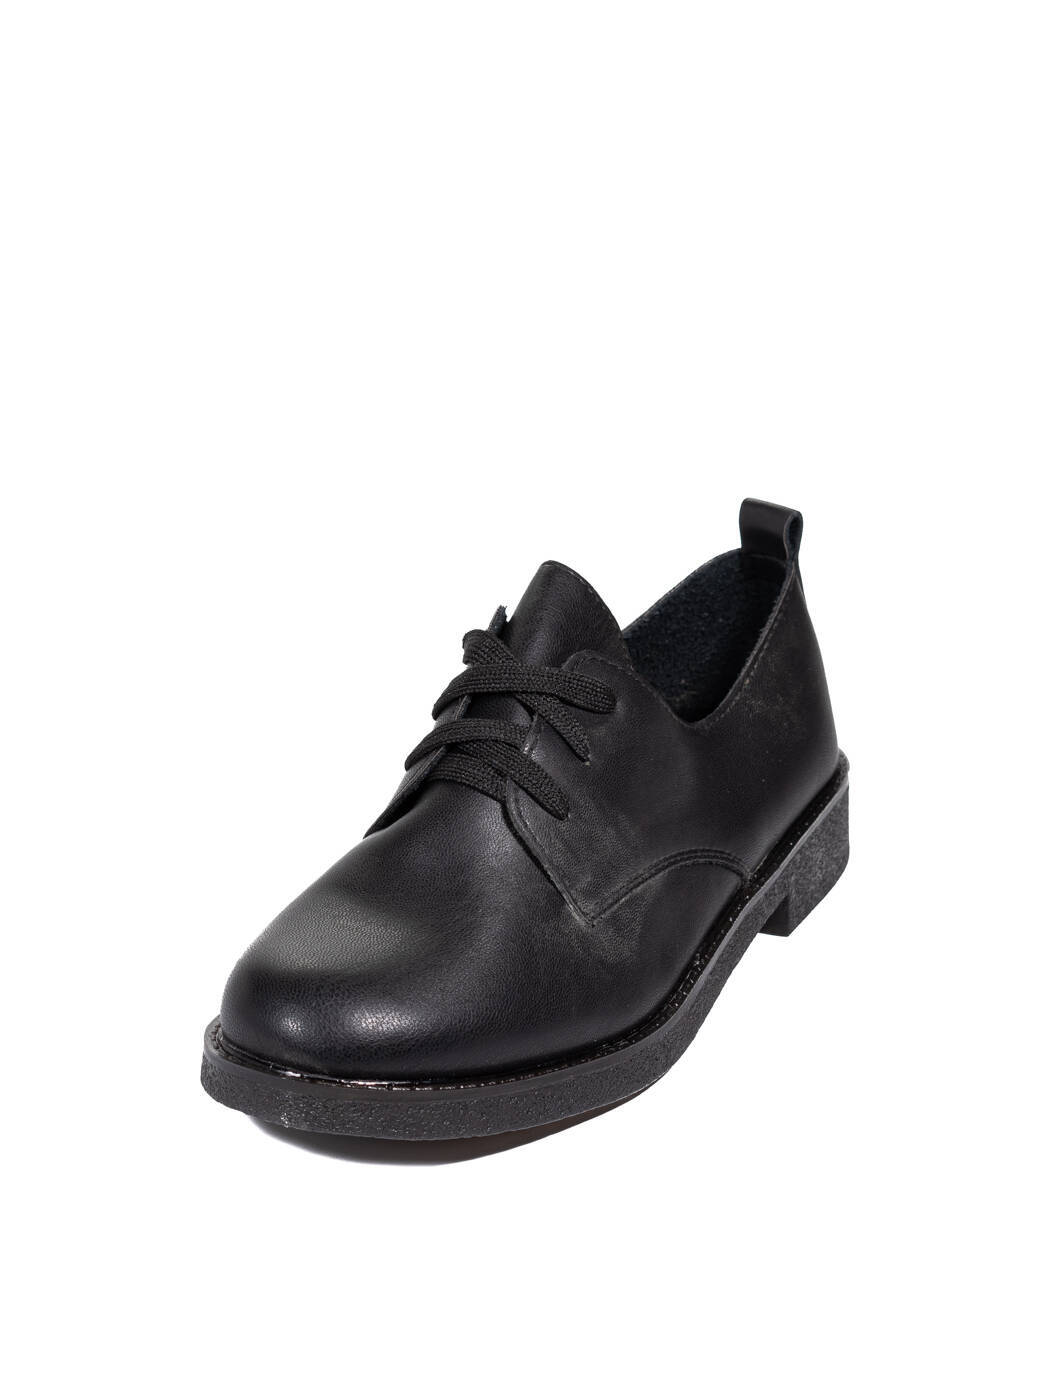 Туфли Oxfords женские черные экокожа каблук устойчивый демисезон вид 2